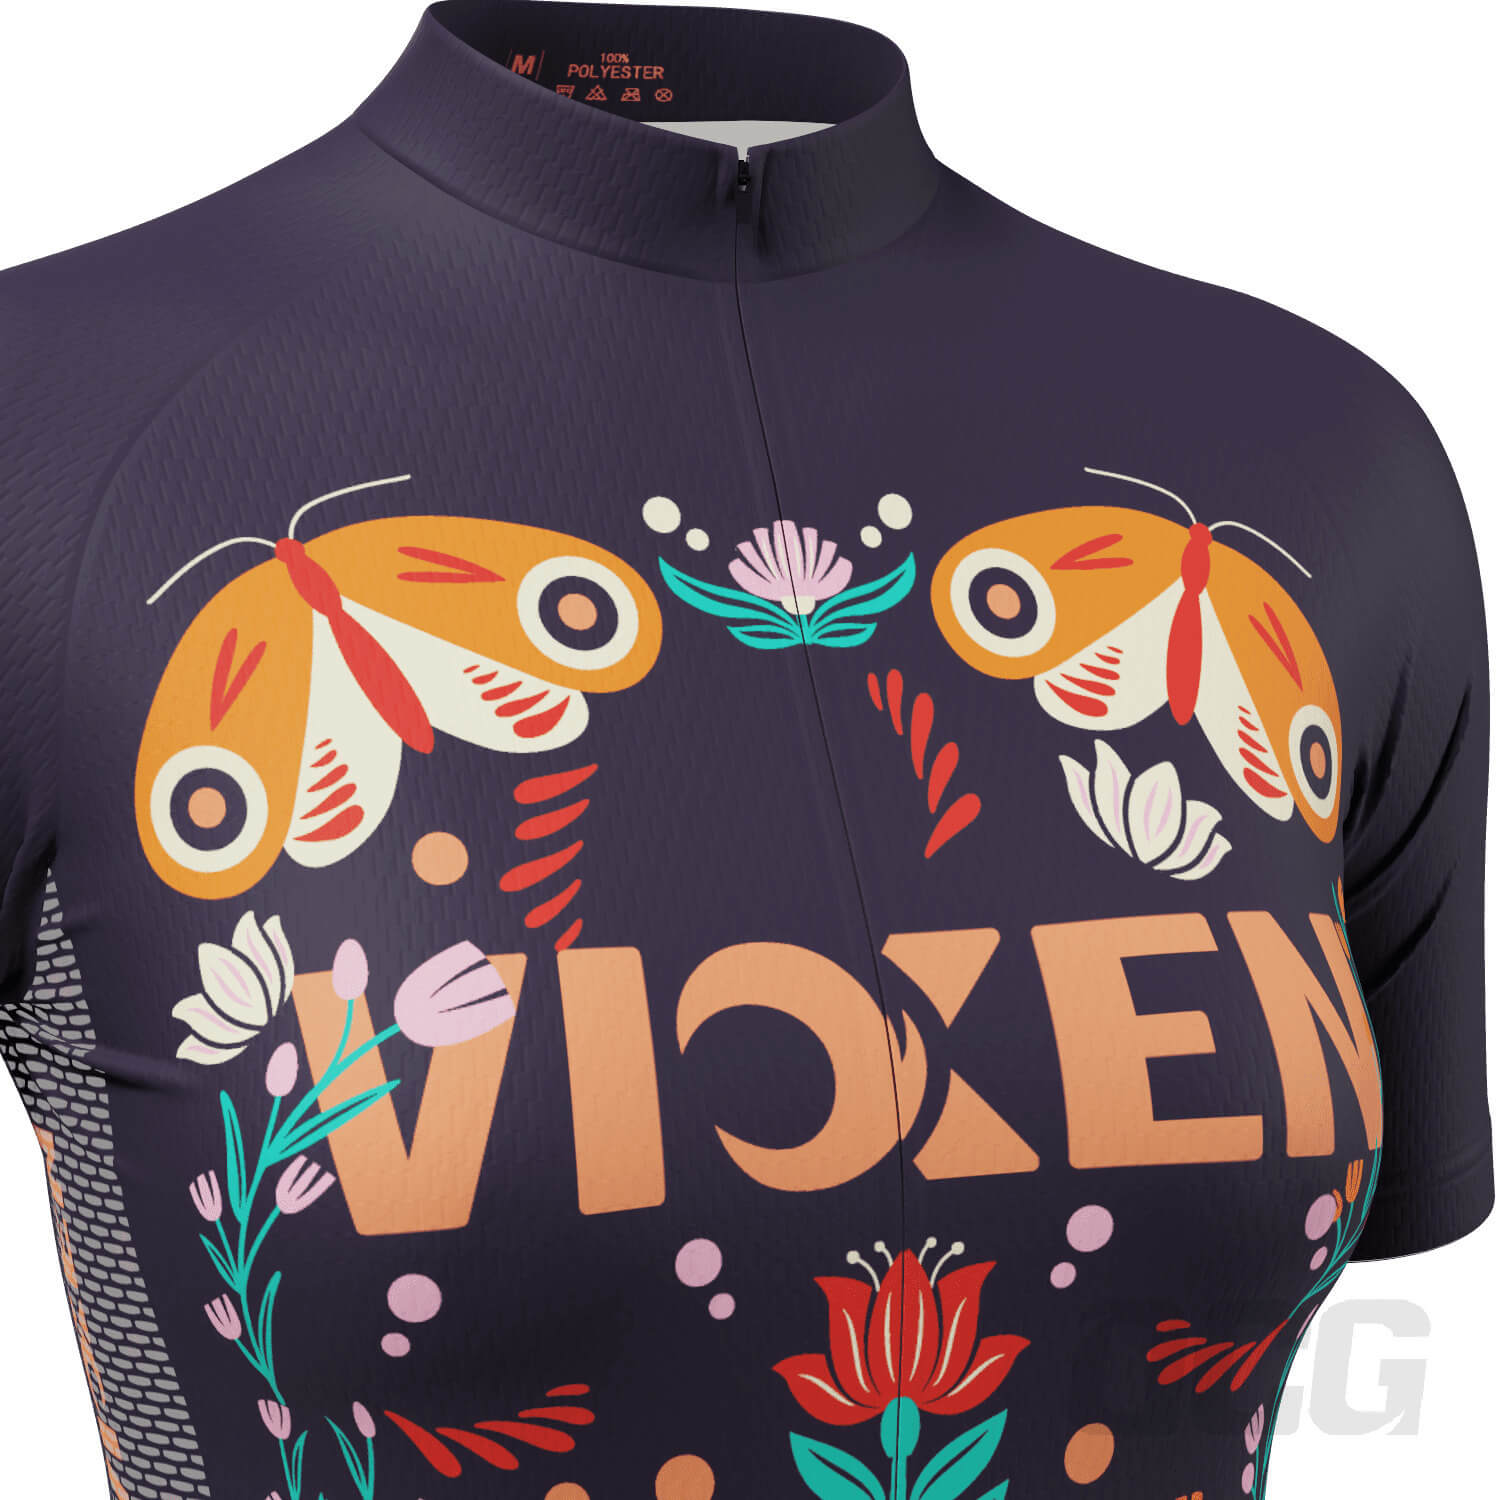 Women's Vixen Butterflies Short Sleeve Cycling Jersey